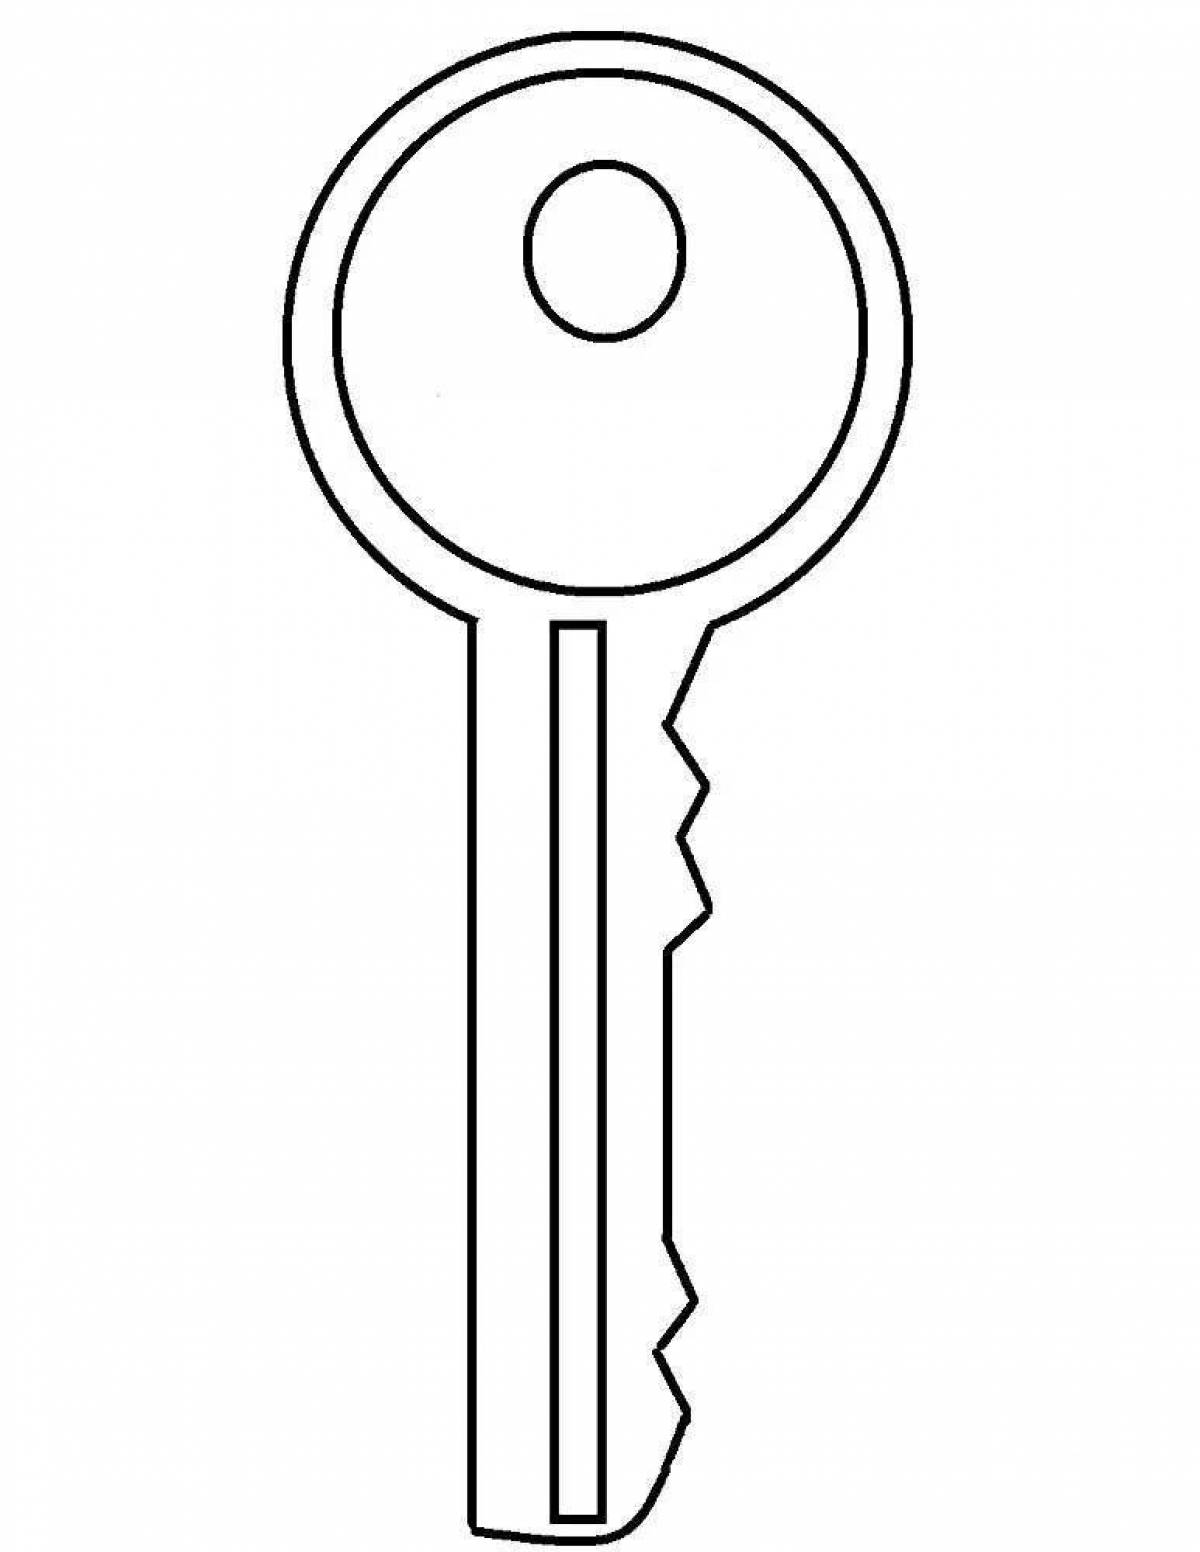 Child key #19